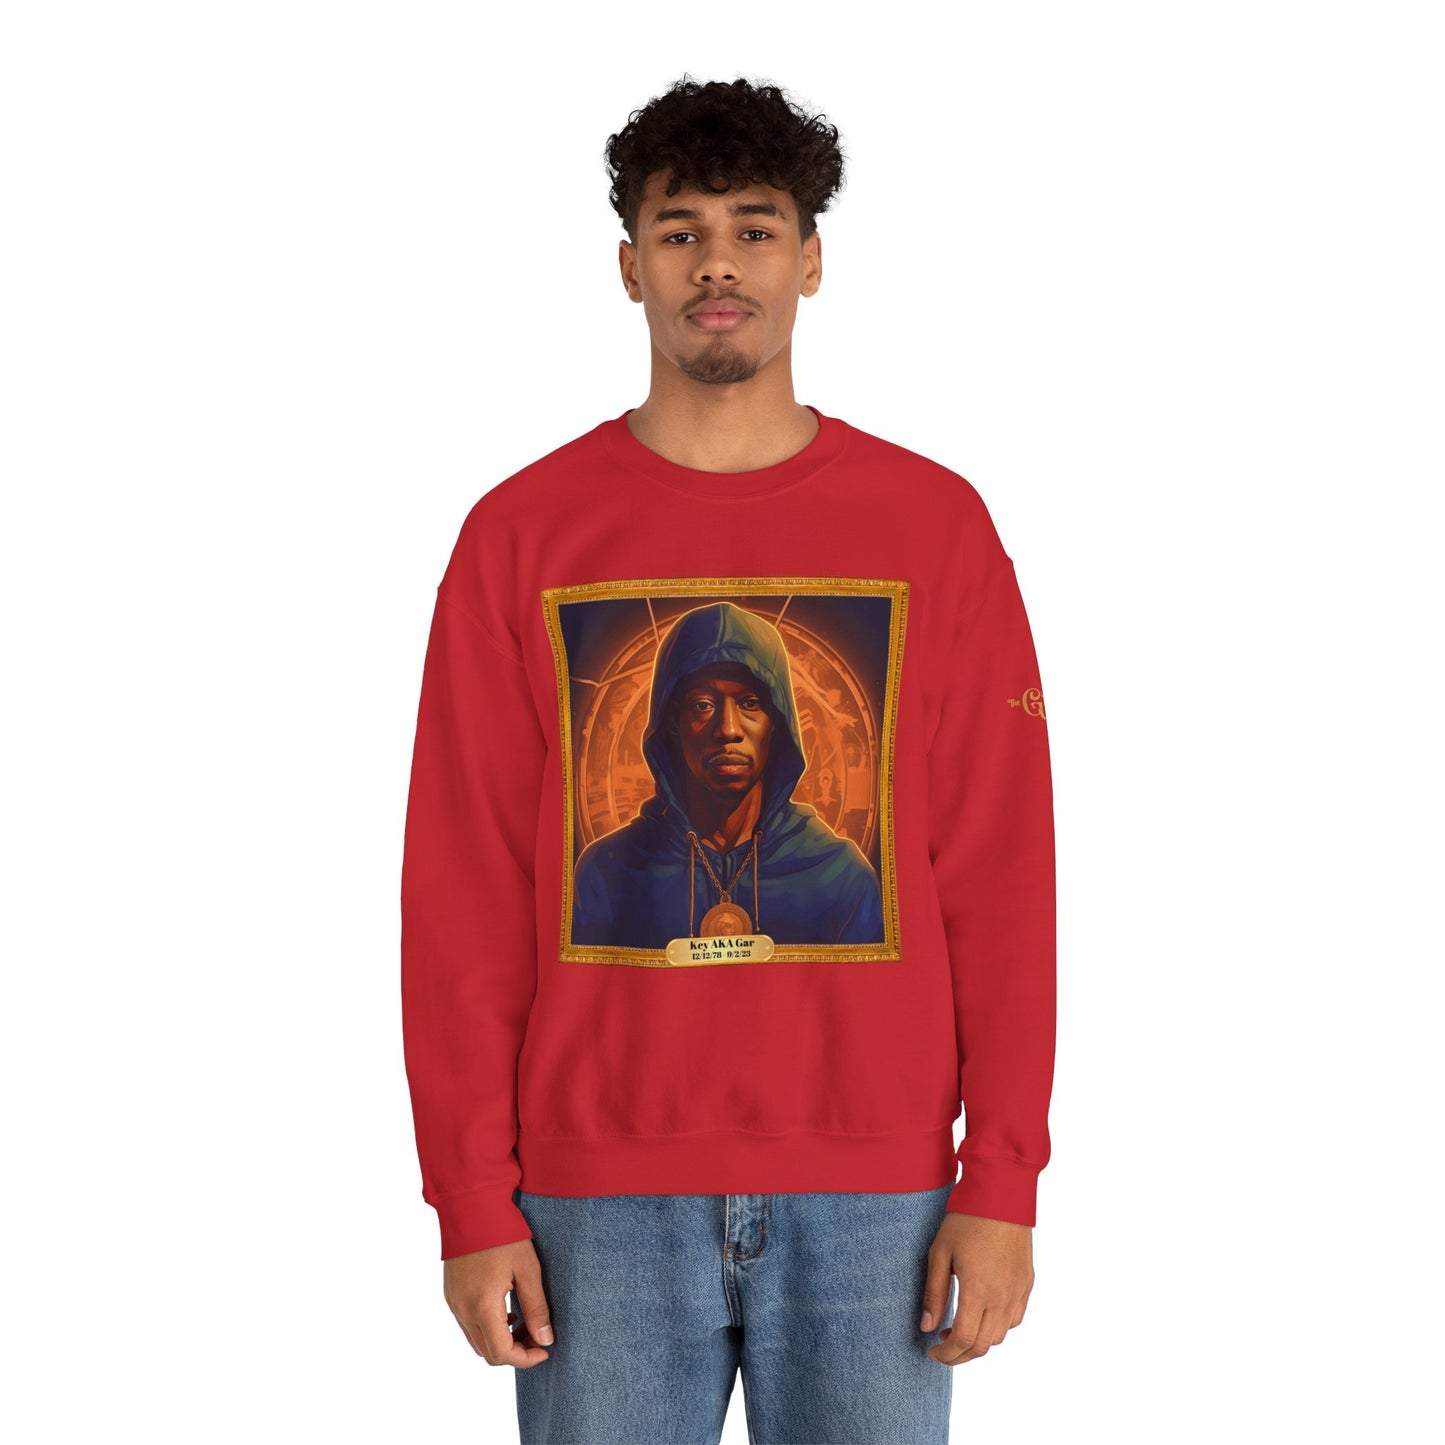 RIP Gar Sweatshirt - Limited Edition